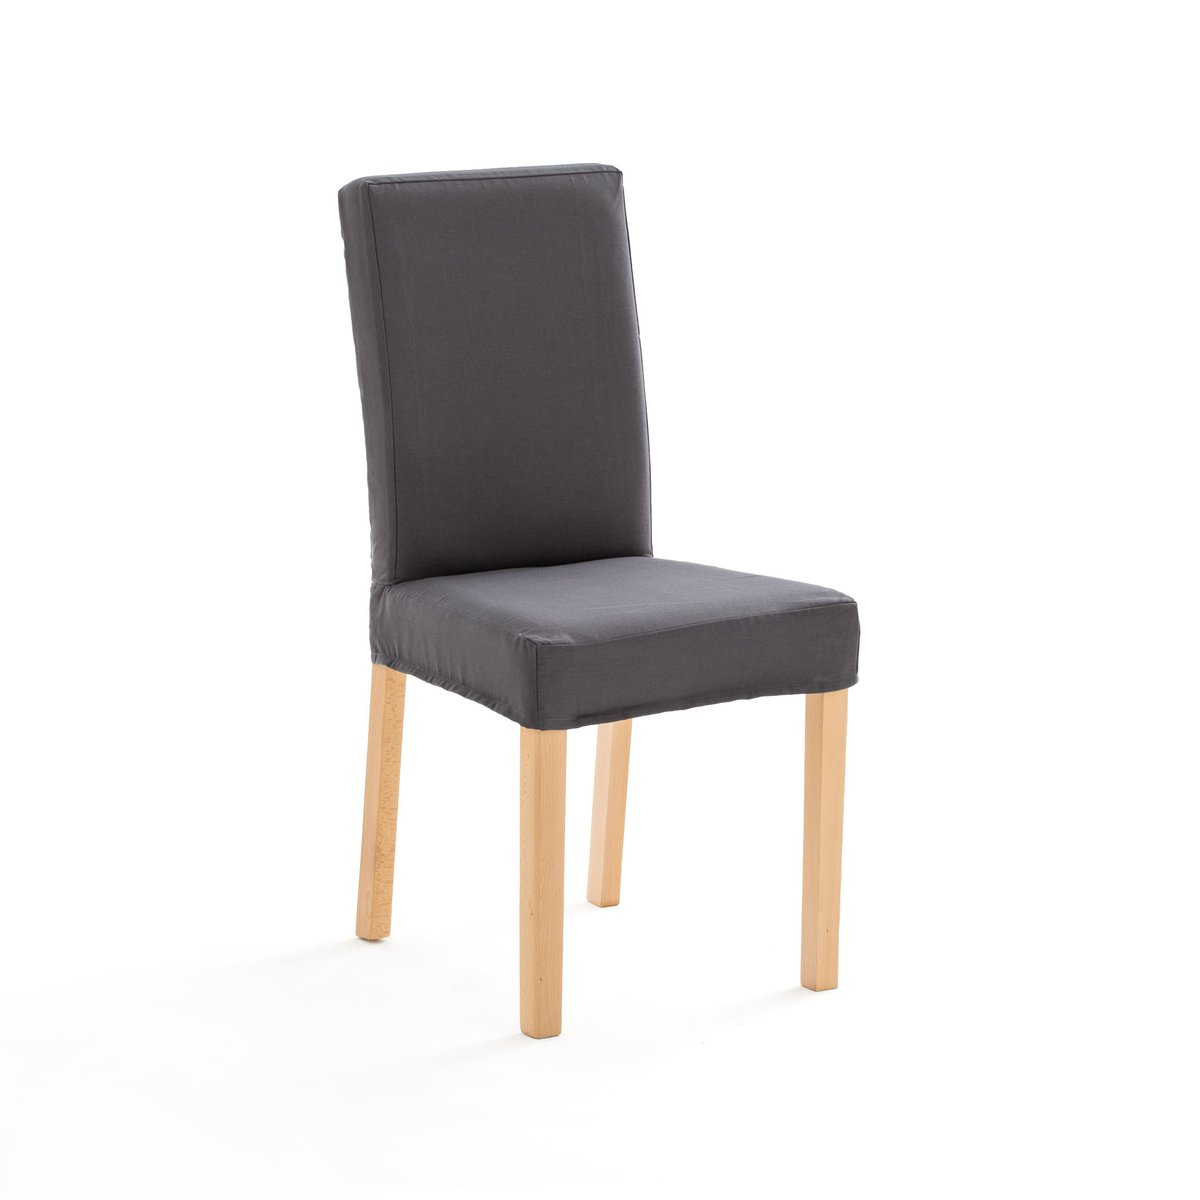 Чехол La Redoute На стул из хлопка DOMME единый размер серый - фото 1